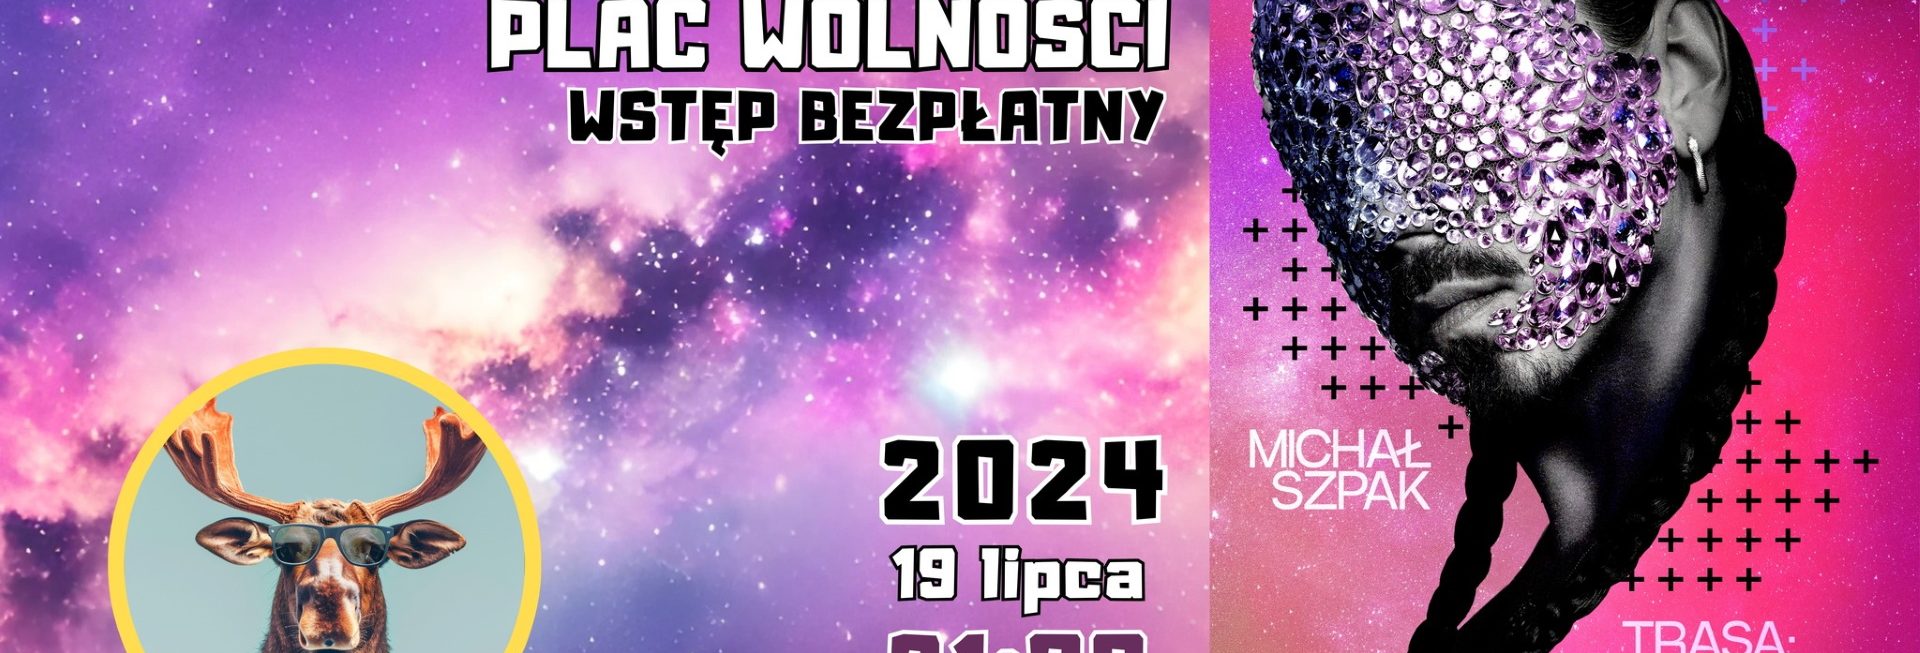 Plakat zapraszający w piątek 19 lipca 2024 r. do Olecka na koncert Michał Szpak - Trasa JowiszJa Przystanek Olecko 2024.